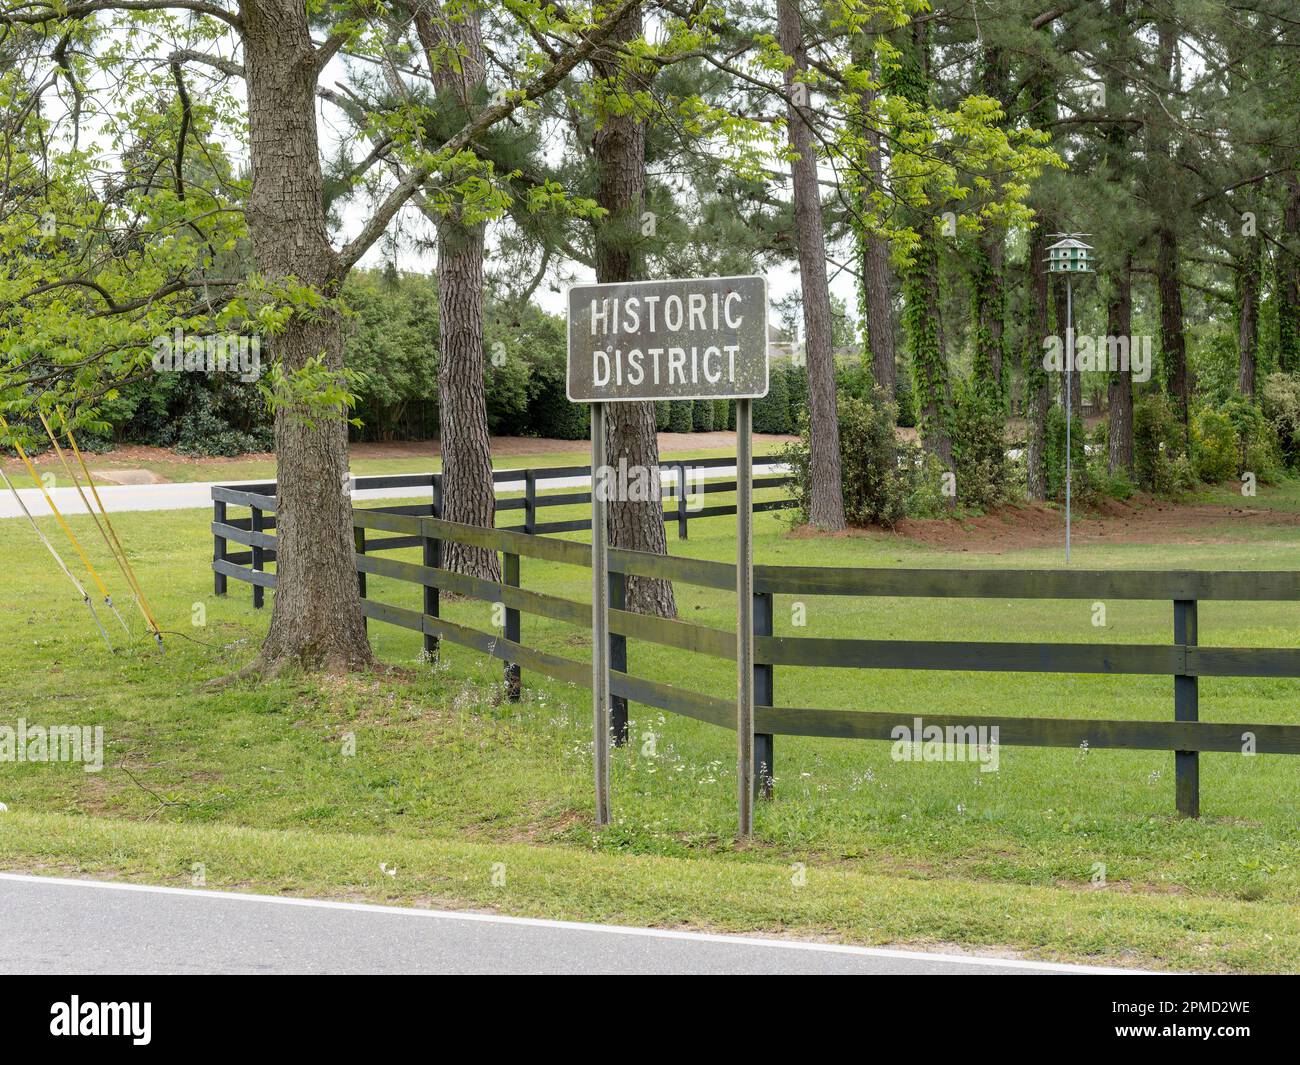 Panneau de district historique affiché dans la région pour indiquer une région historique d'une communauté rurale avec l'histoire notée à Pike Road Alabama, États-Unis. Banque D'Images